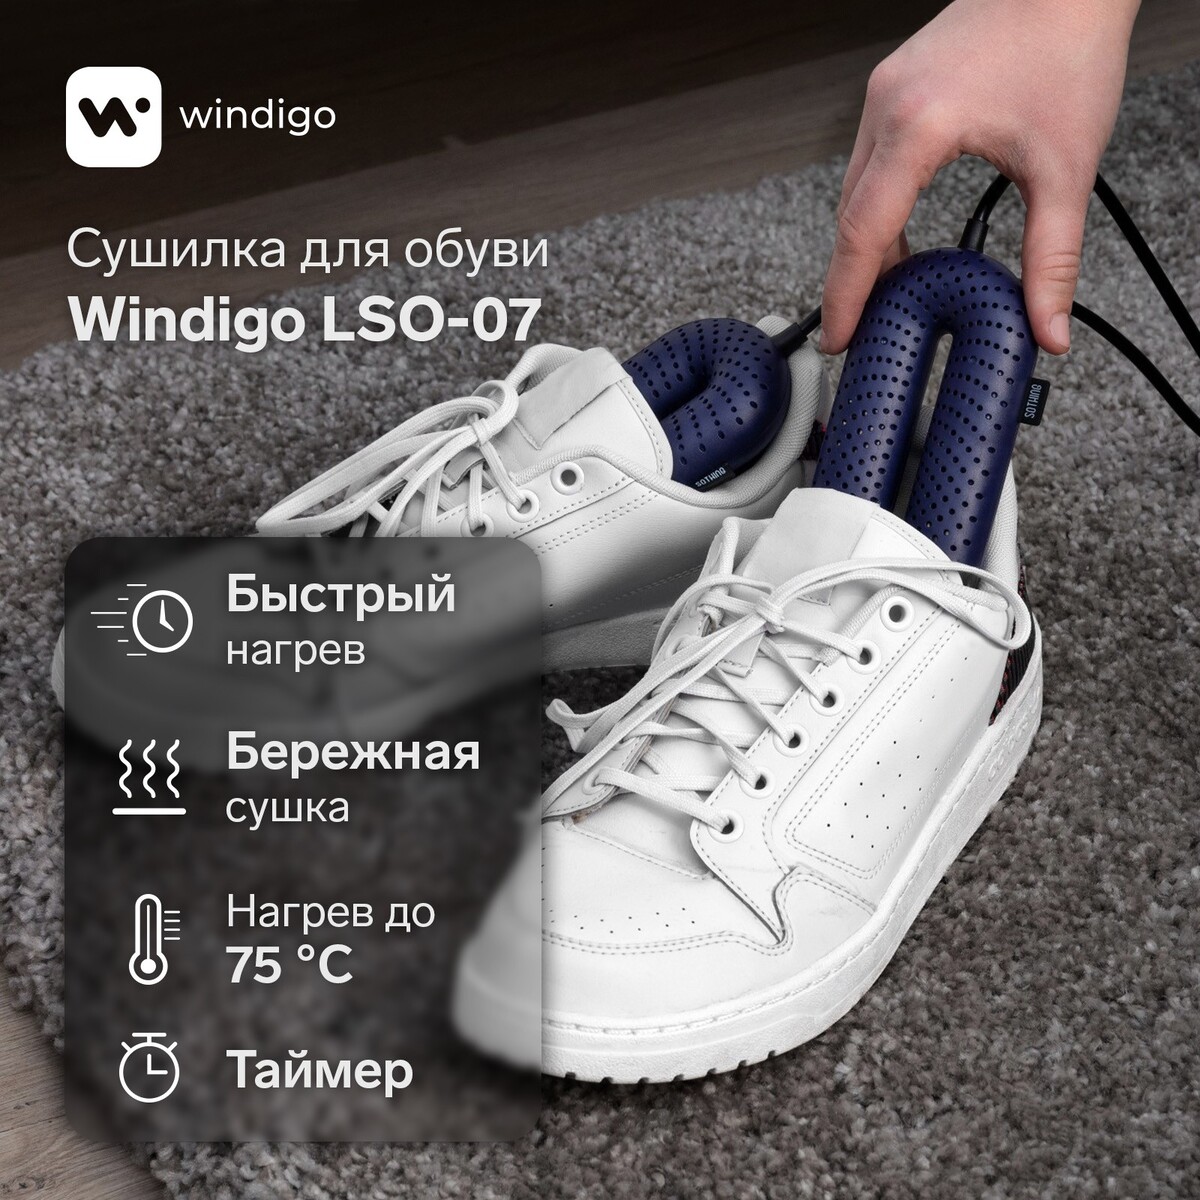 фото Сушилка для обуви windigo lso-07, 17 см, 20 вт, индикатор, таймер 3/6/9 часов, синяя